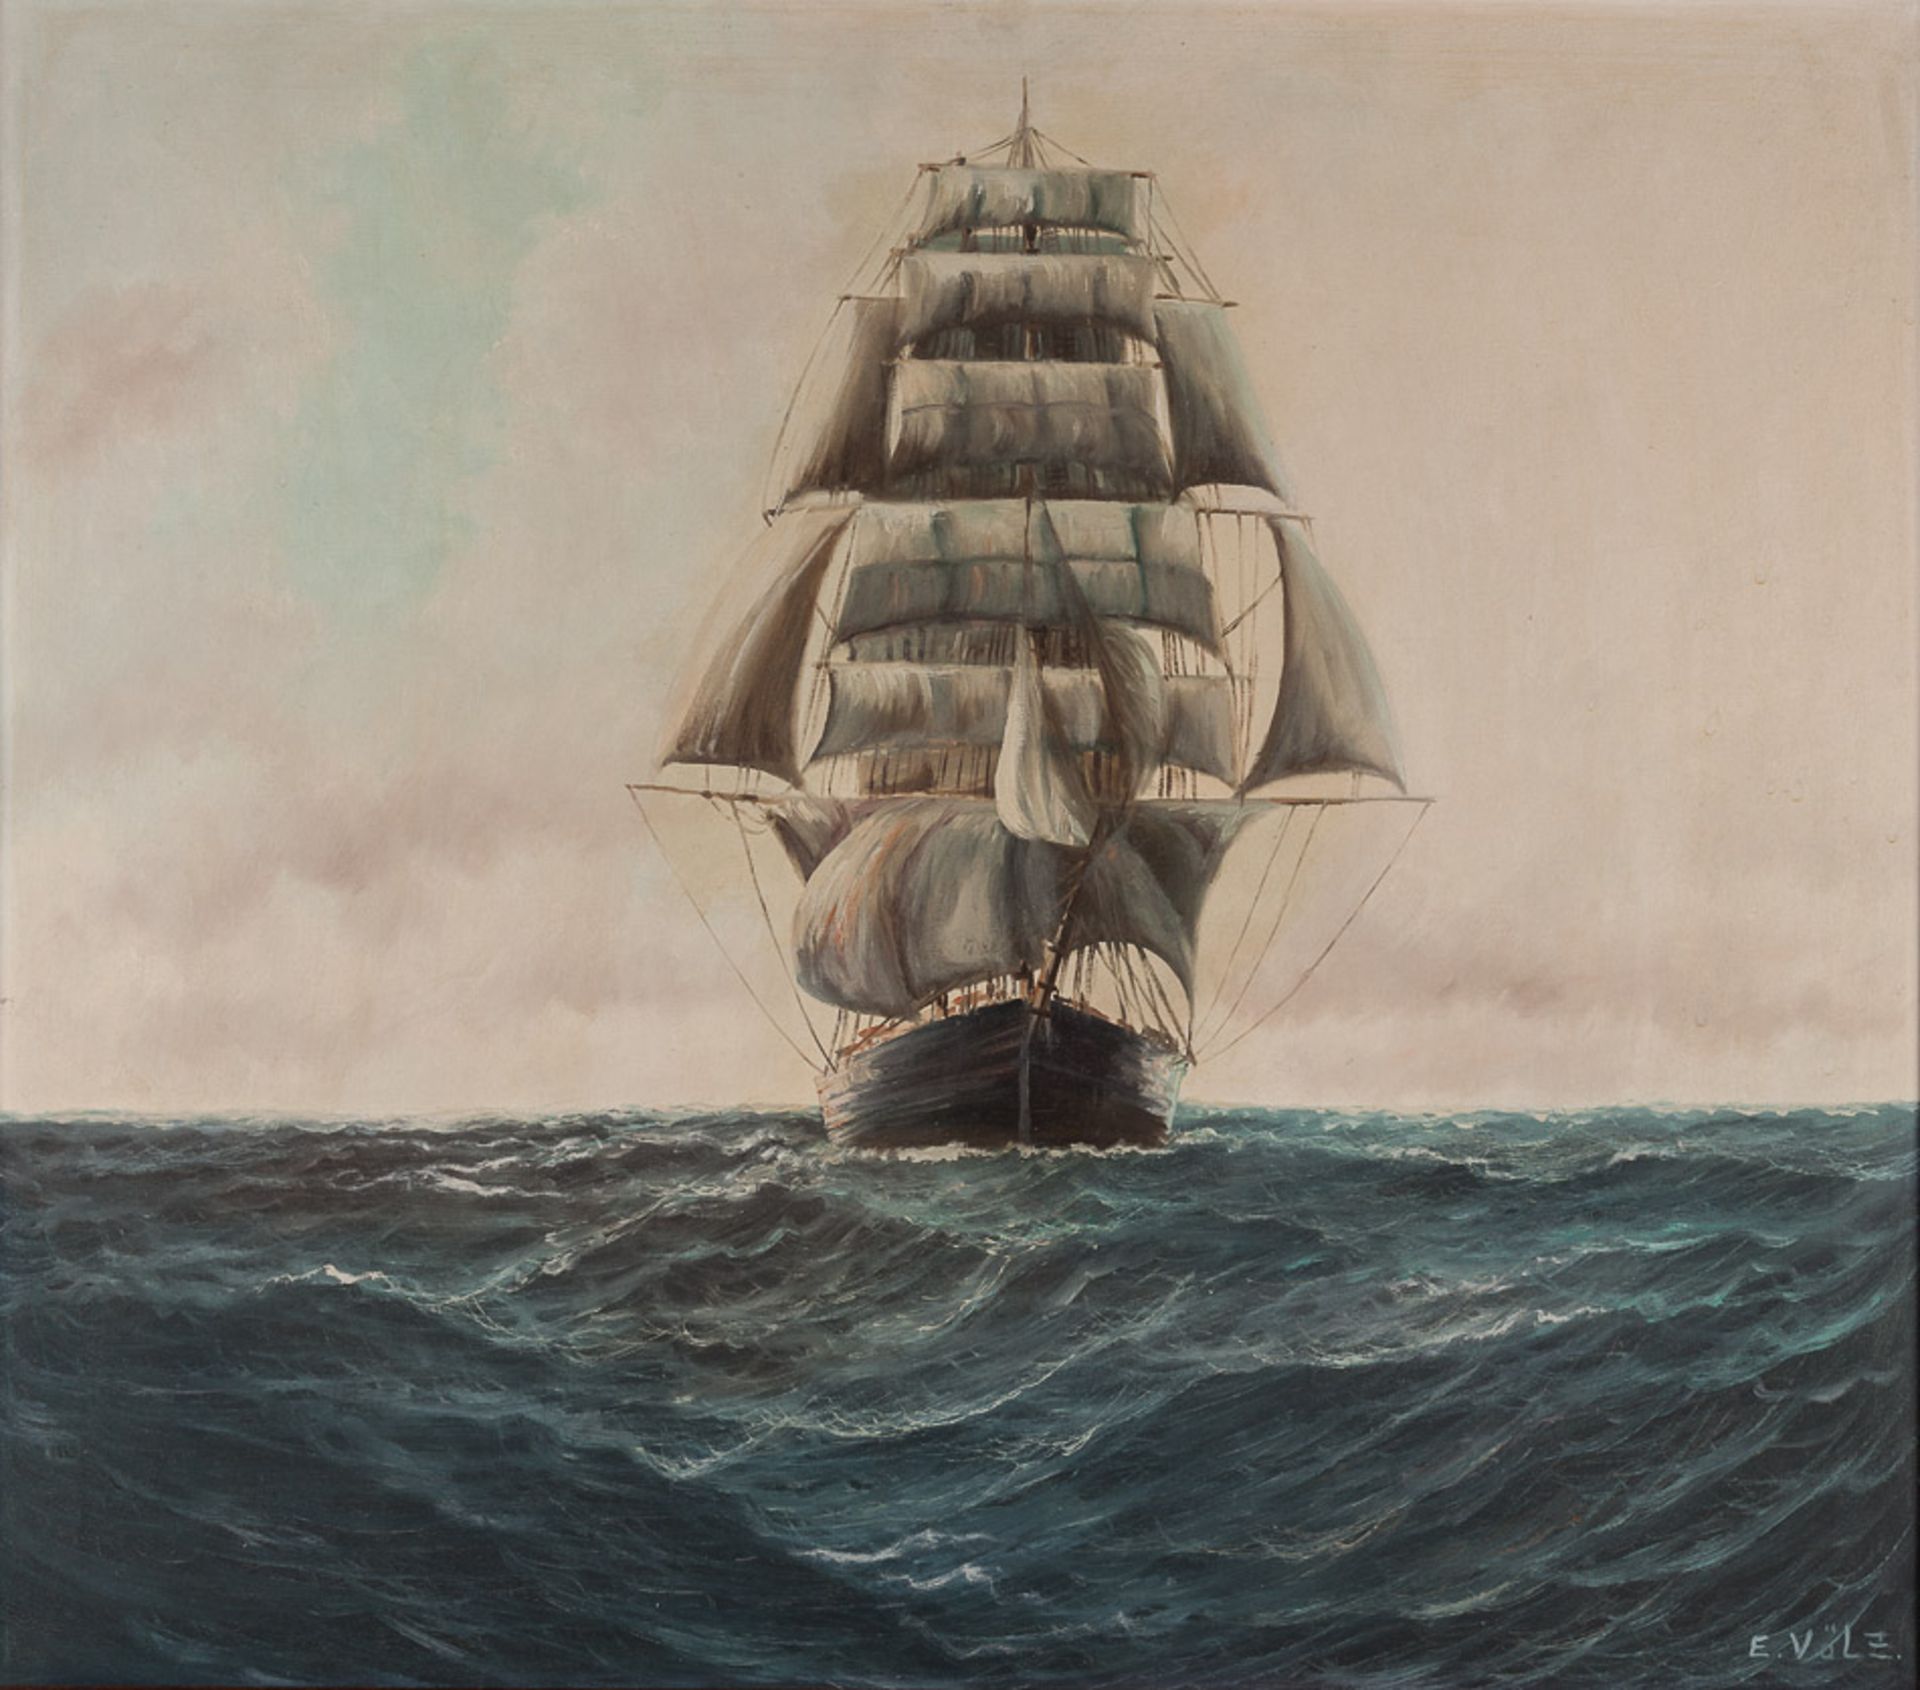 Edmund Völz (1902-1972)"Segelschiff auf Hoher See"
Gemälde Öl/Leinwand, 69 cm x 79 cm, gerahmt,